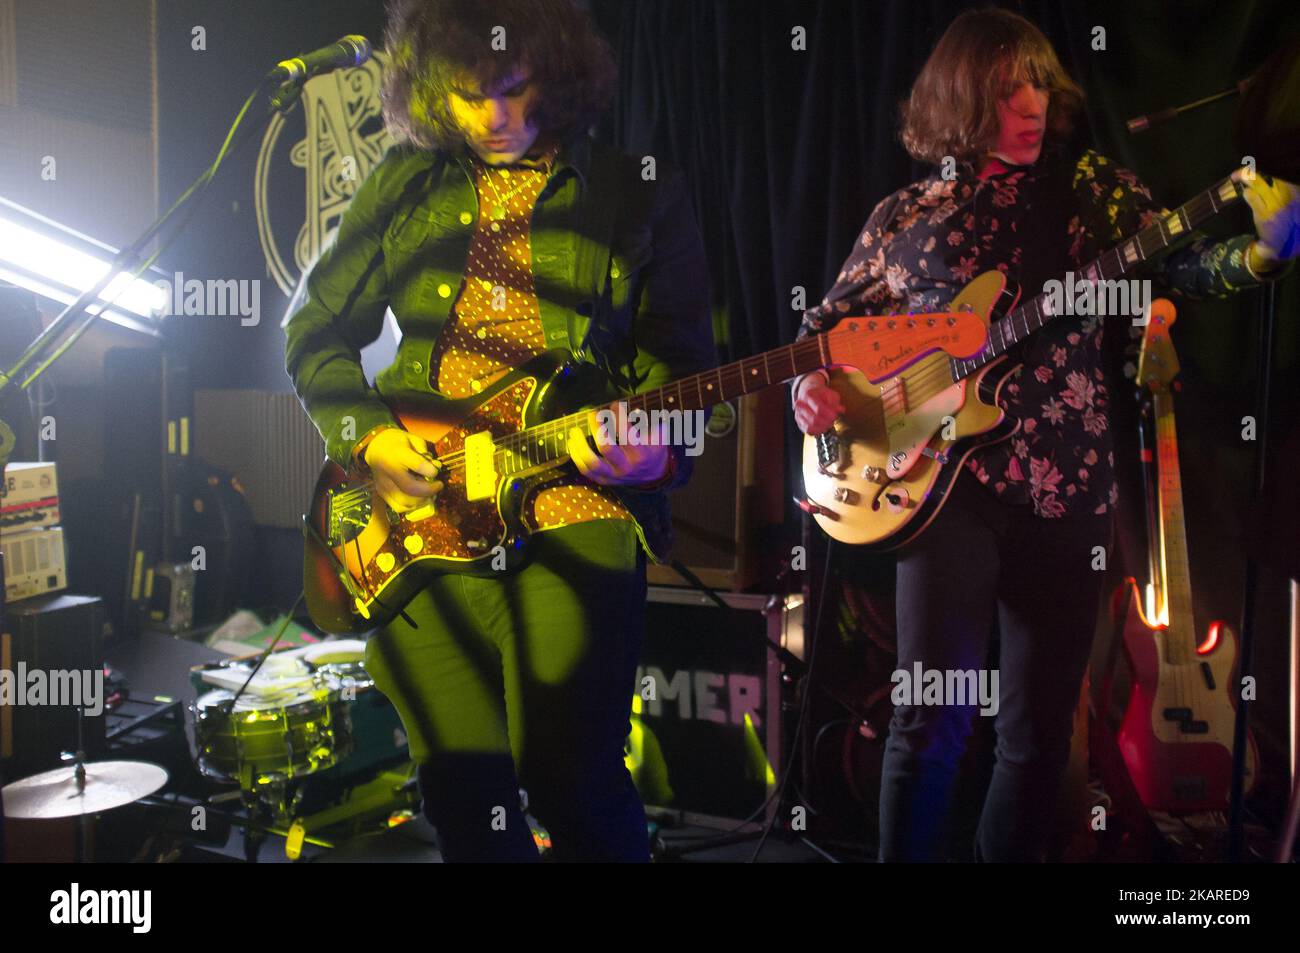 Band psichedelica indie britannica la Shimmer Band è stata vista sul palco mentre si esibiva a Nambucca, a Londra, il 19 settembre 2017. La Shimmer Band inizierà il suo primo tour nel Regno Unito. (Foto di Alberto Pezzali/NurPhoto) Foto Stock